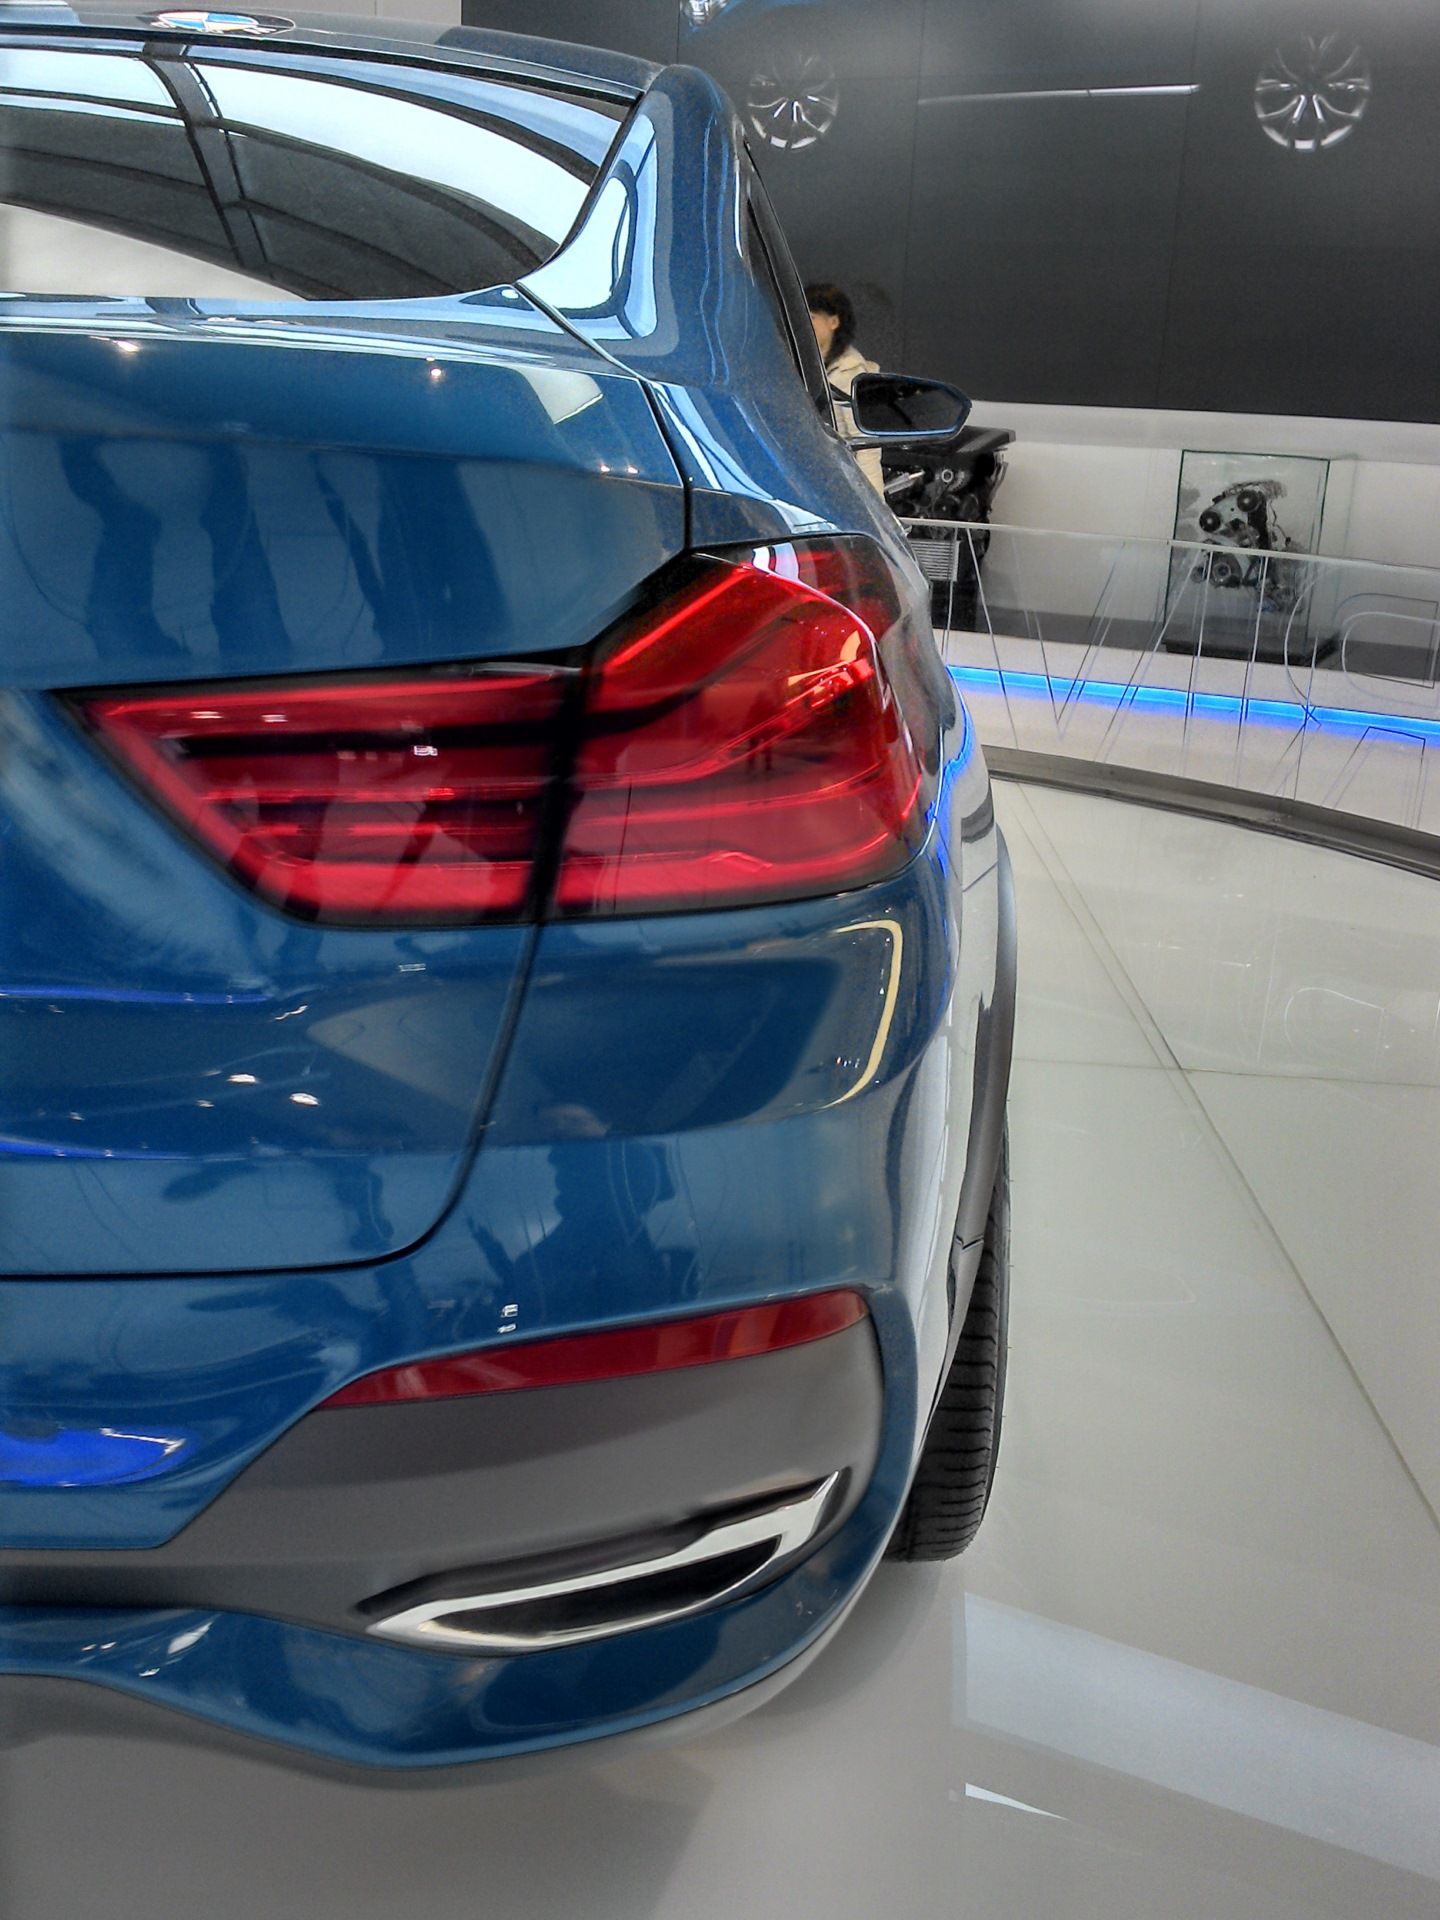 2015 BMW X4 Concept